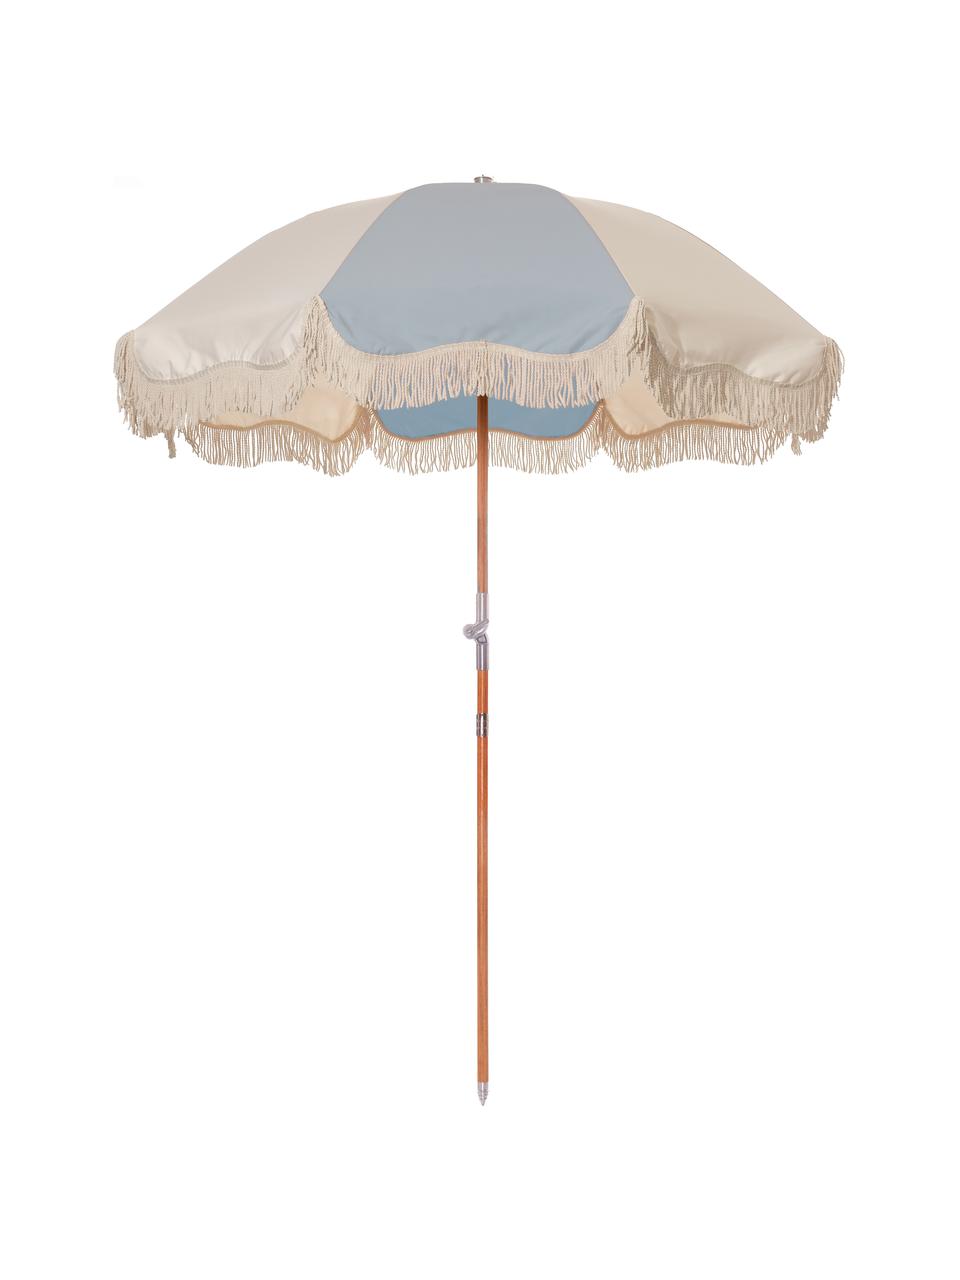 Parasol vintage à franges Retro, pliable, Bleu ciel, blanc cassé, Ø 180 x haut. 230 cm